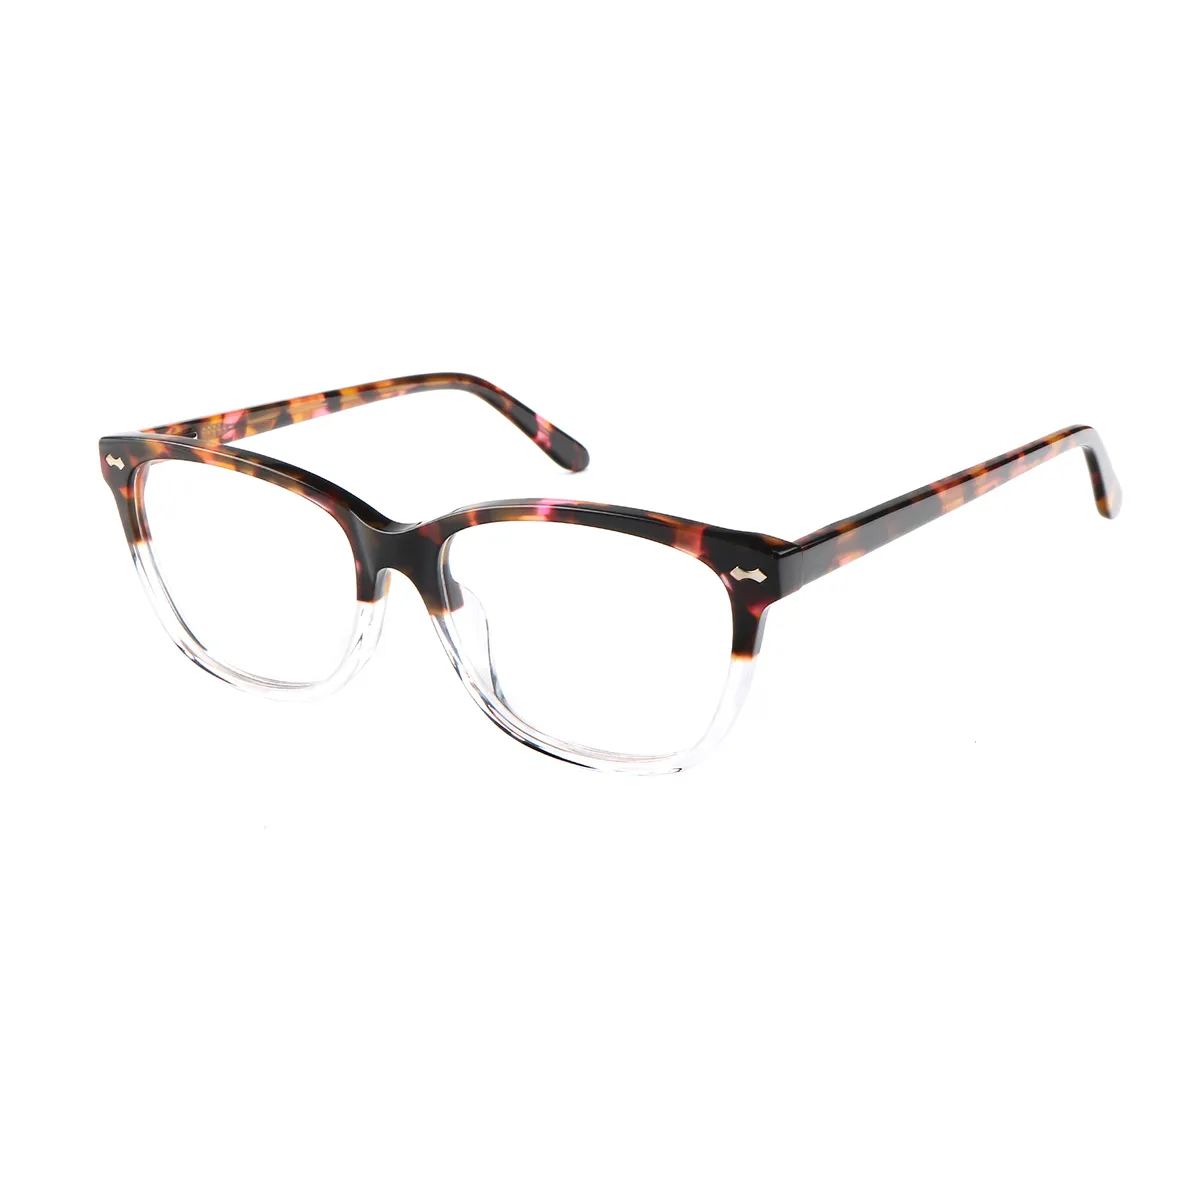 Mobley - Square Tortoiseshell Glasses for Men & Women